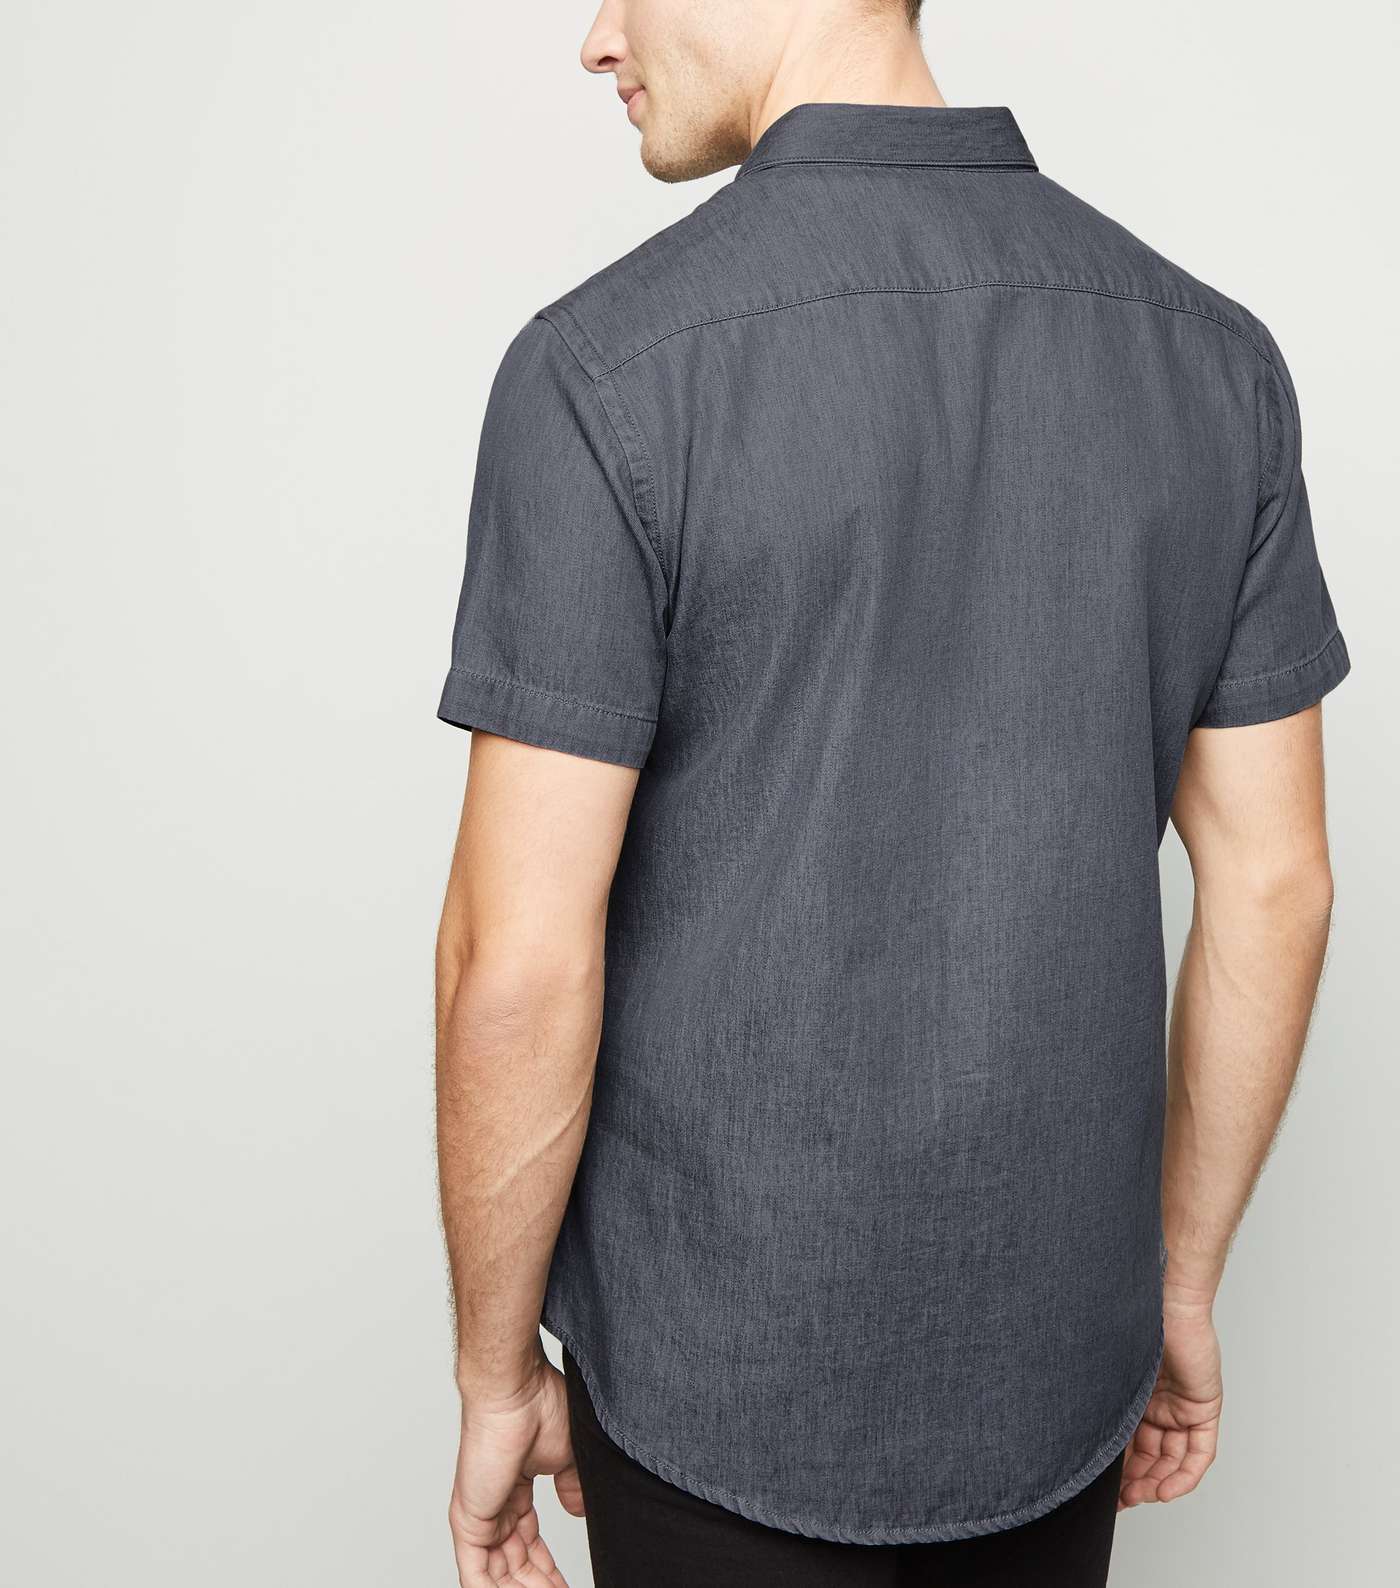 Grey Denim Short Sleeve Shirt Image 3